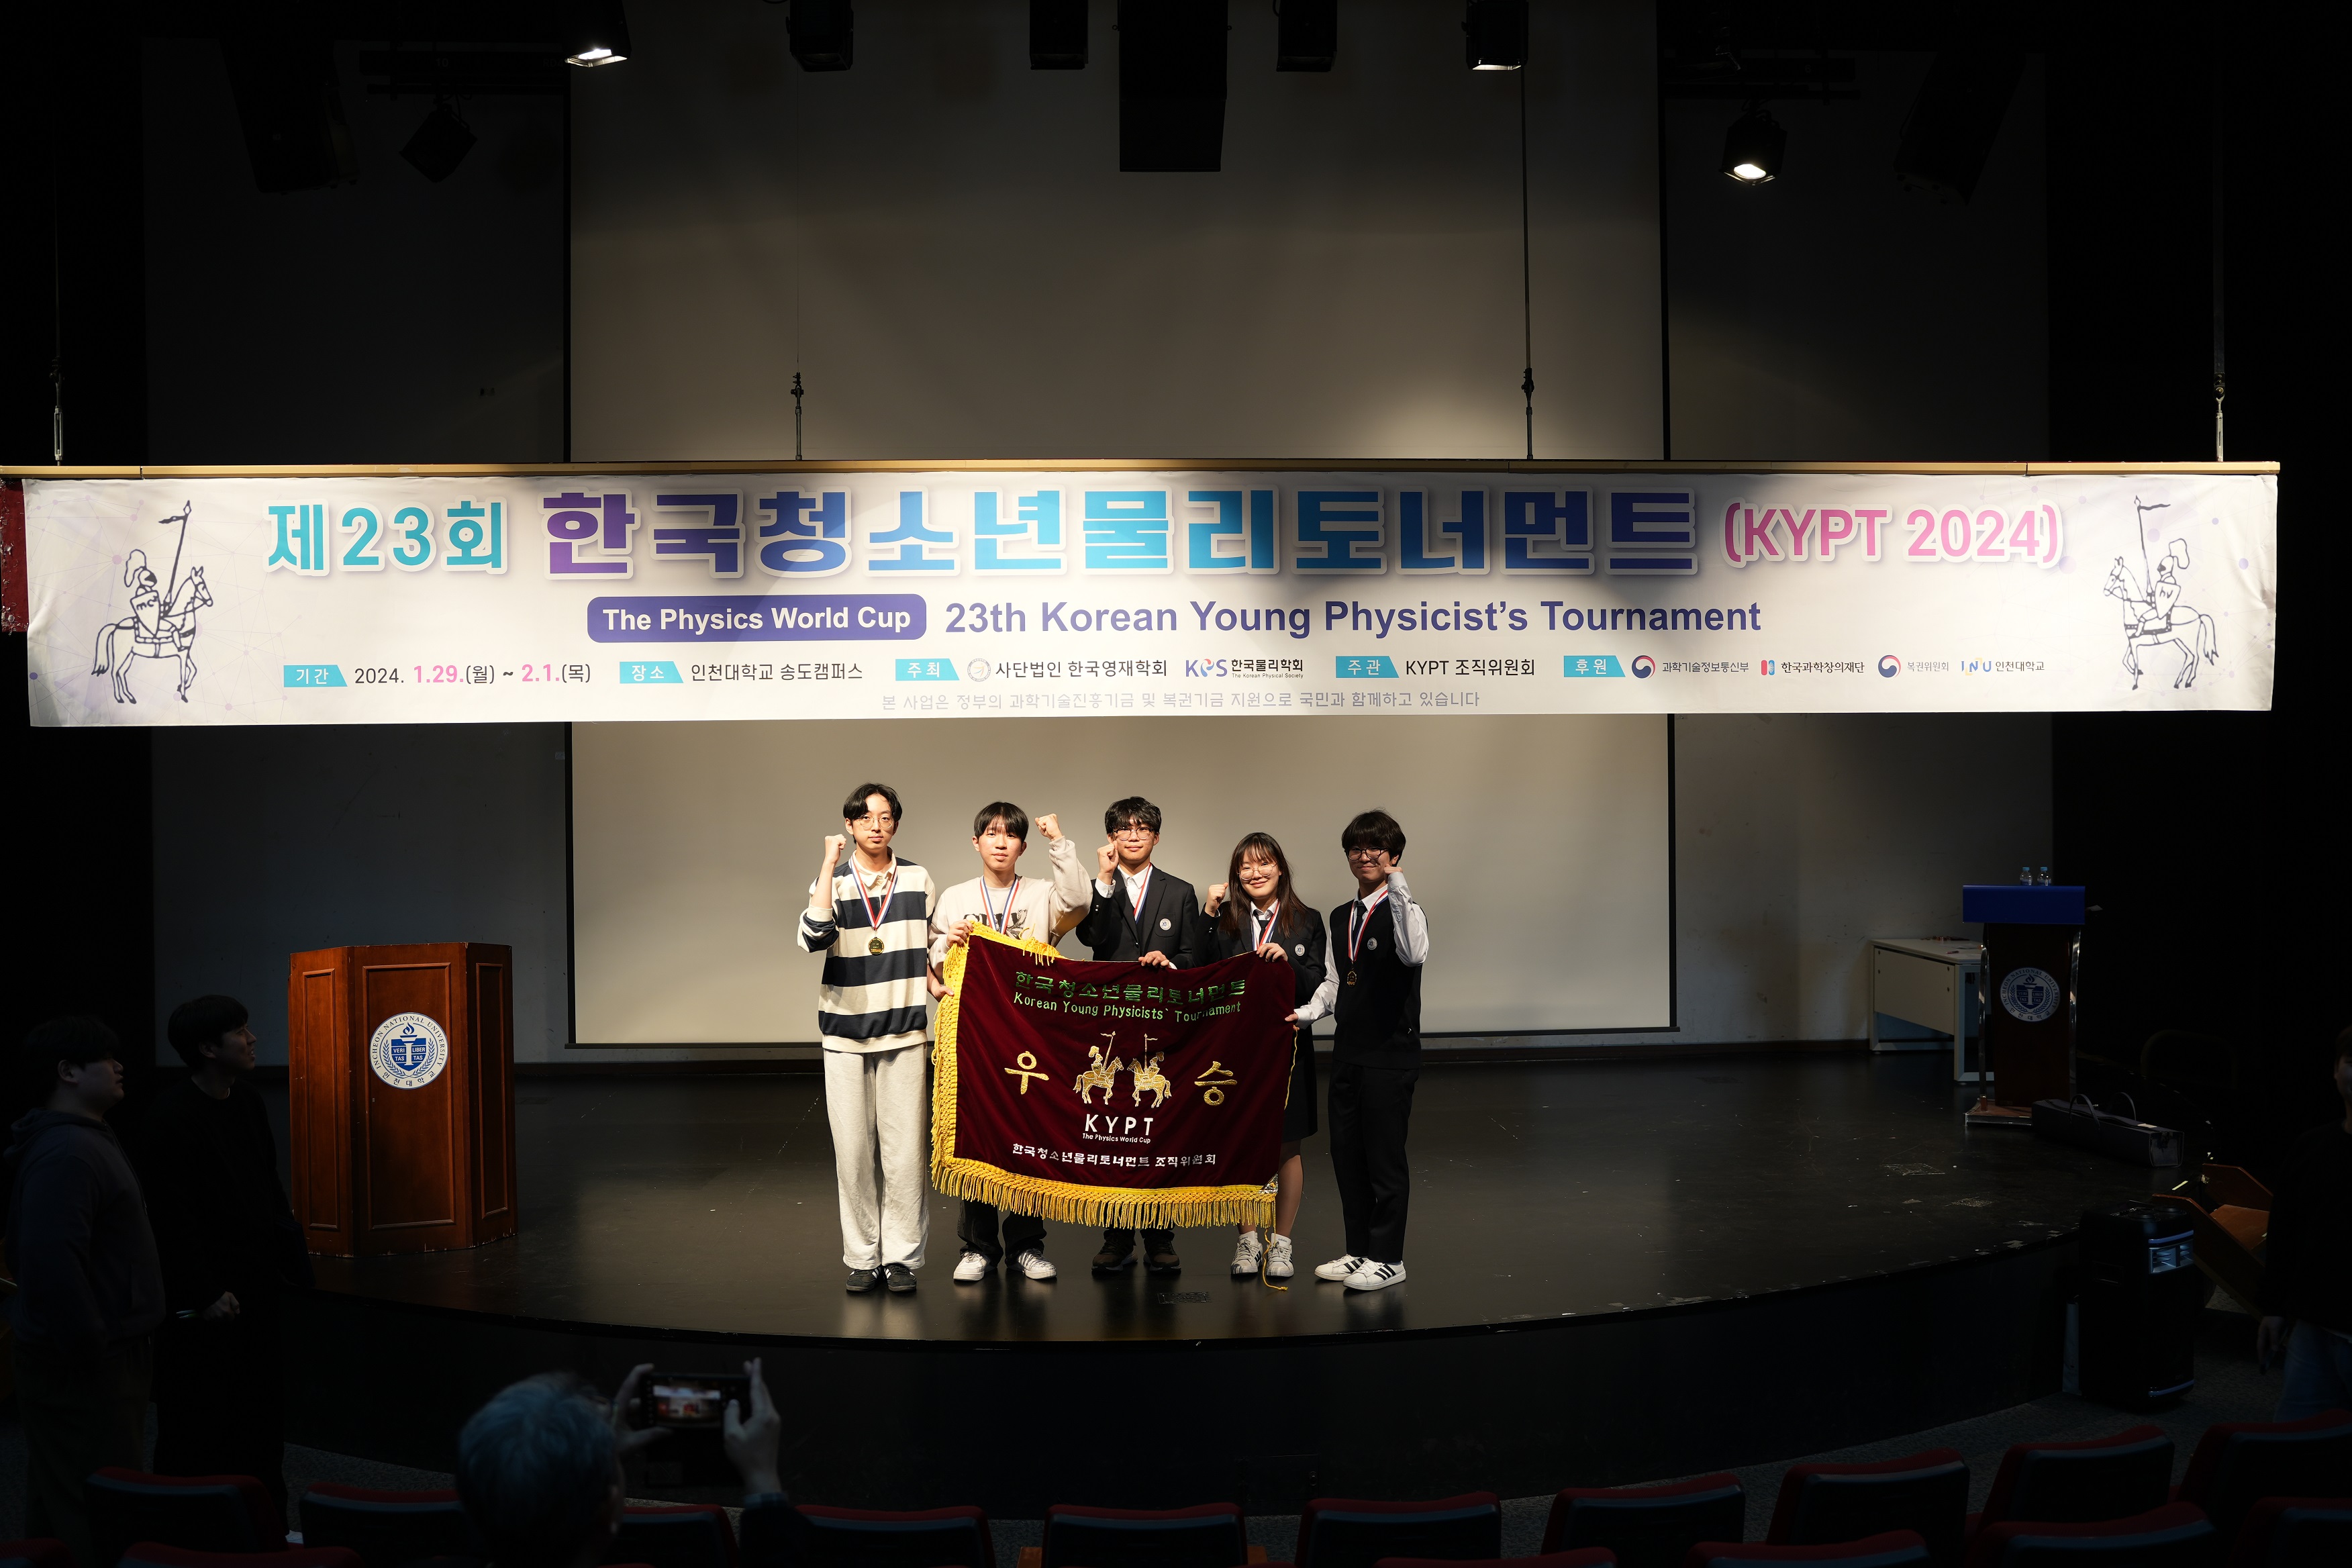 KYPT 우승팀인 한국과학영재학교 BaekYang팀이 우승기를 펼쳐 보이고 있다.